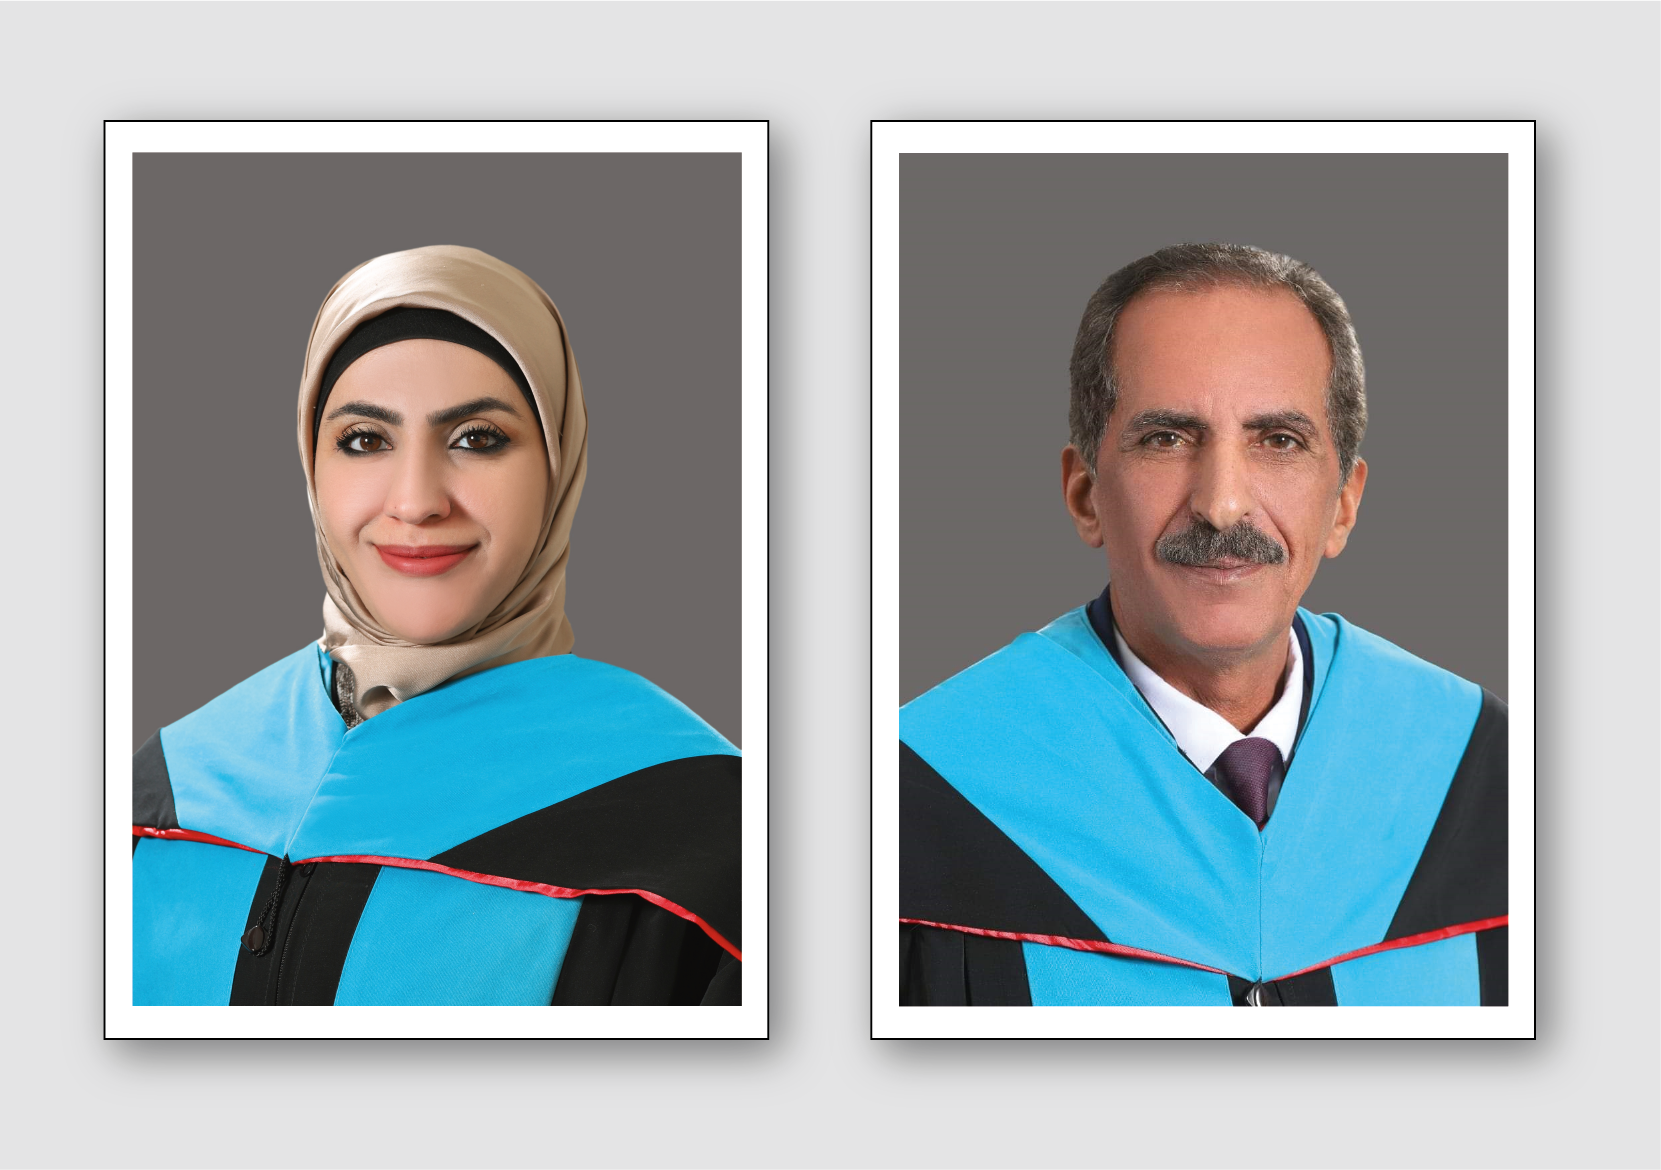 جامعة عمان العربية تشارك في مؤتمر دولي حول "المرأة في الأكاديميا"